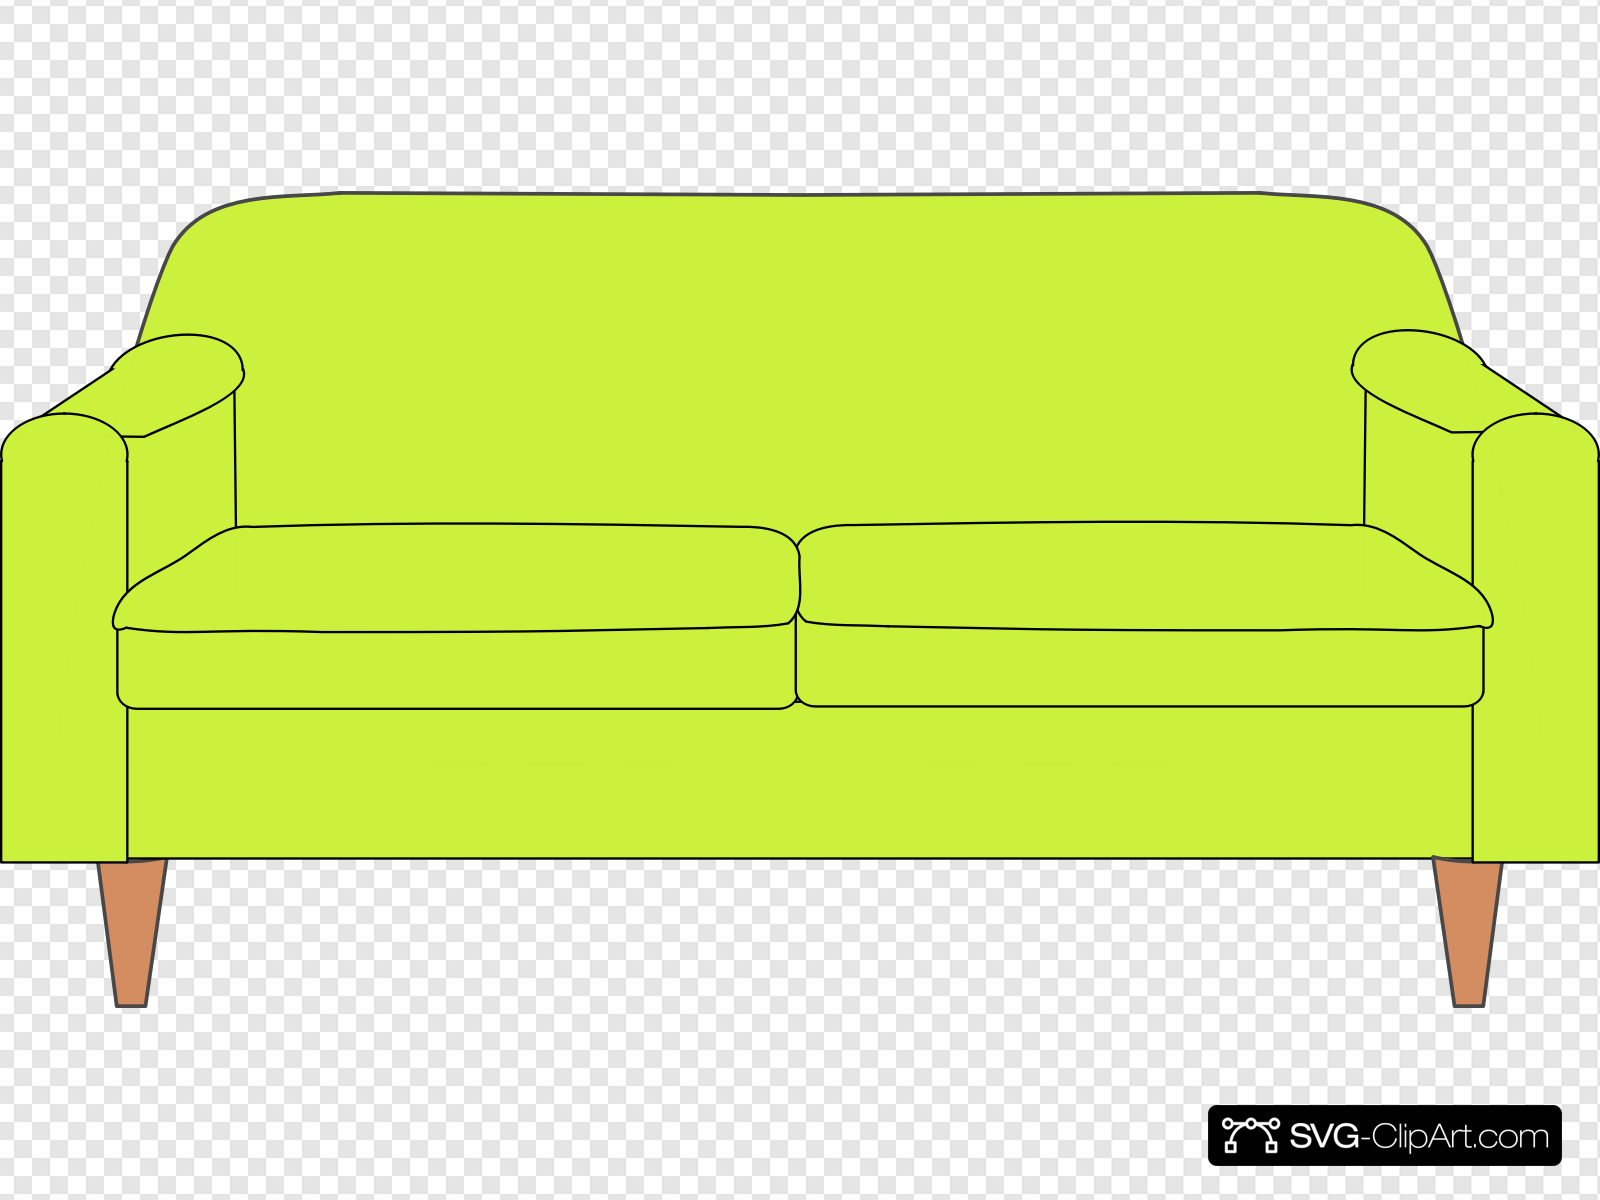 Neon Green Sofa Clip art, Icon and SVG.